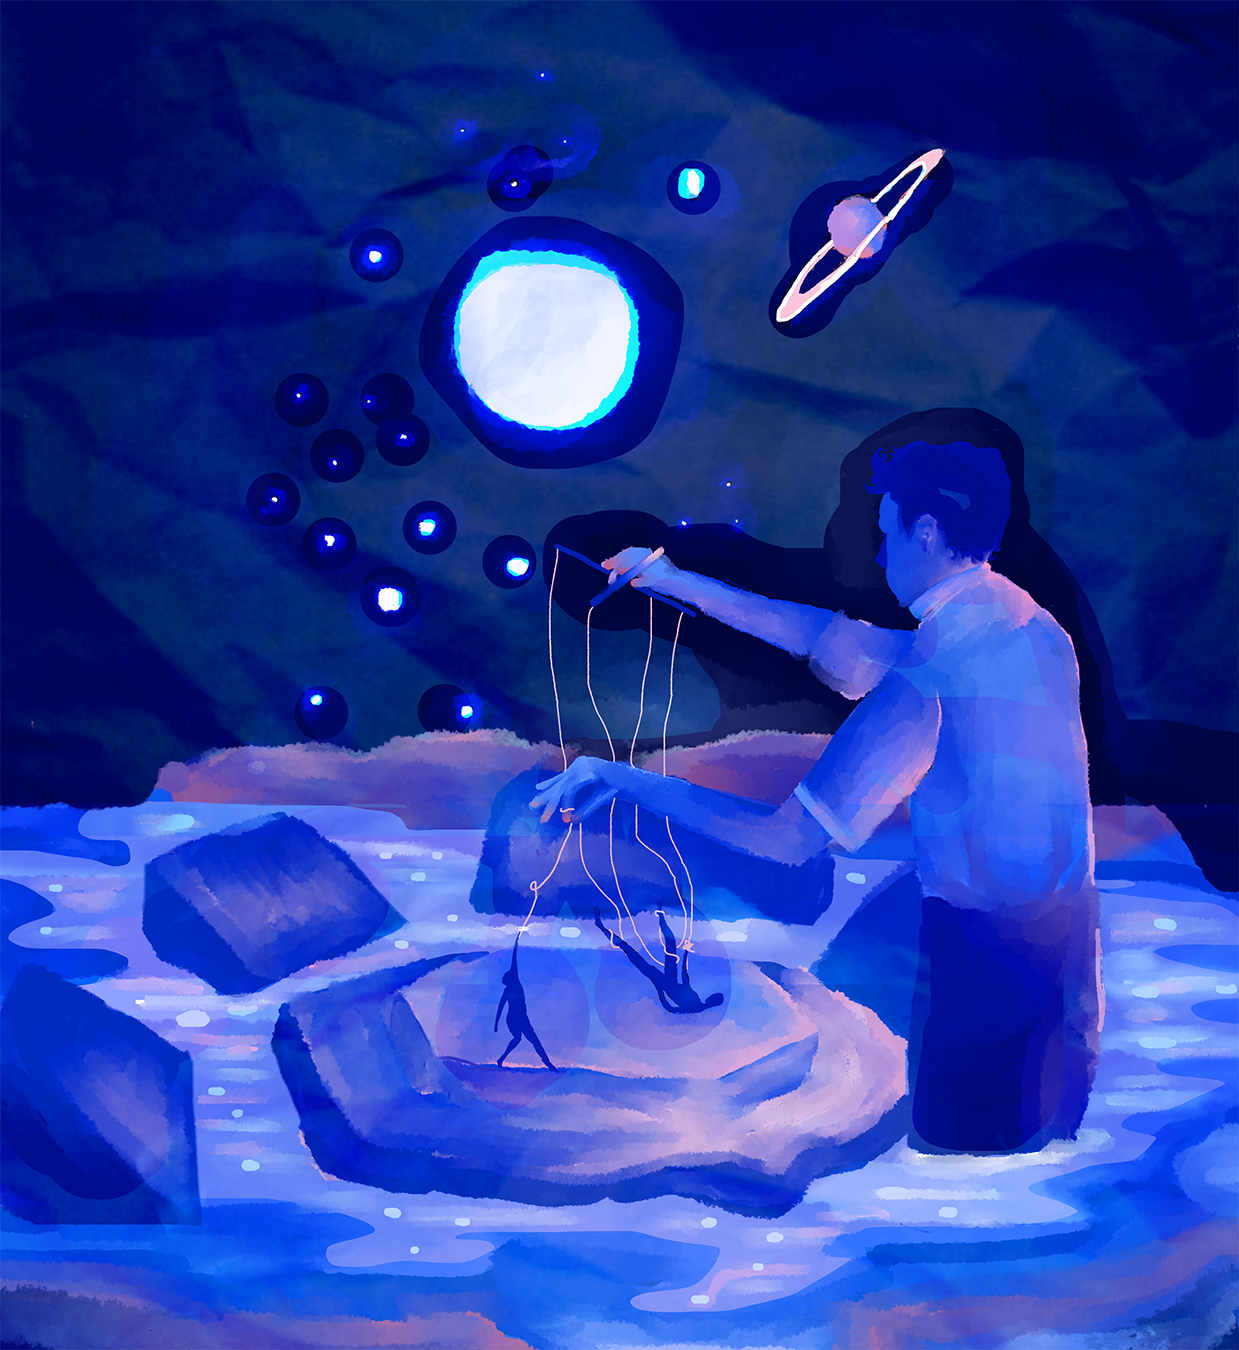 a dark blue illustration